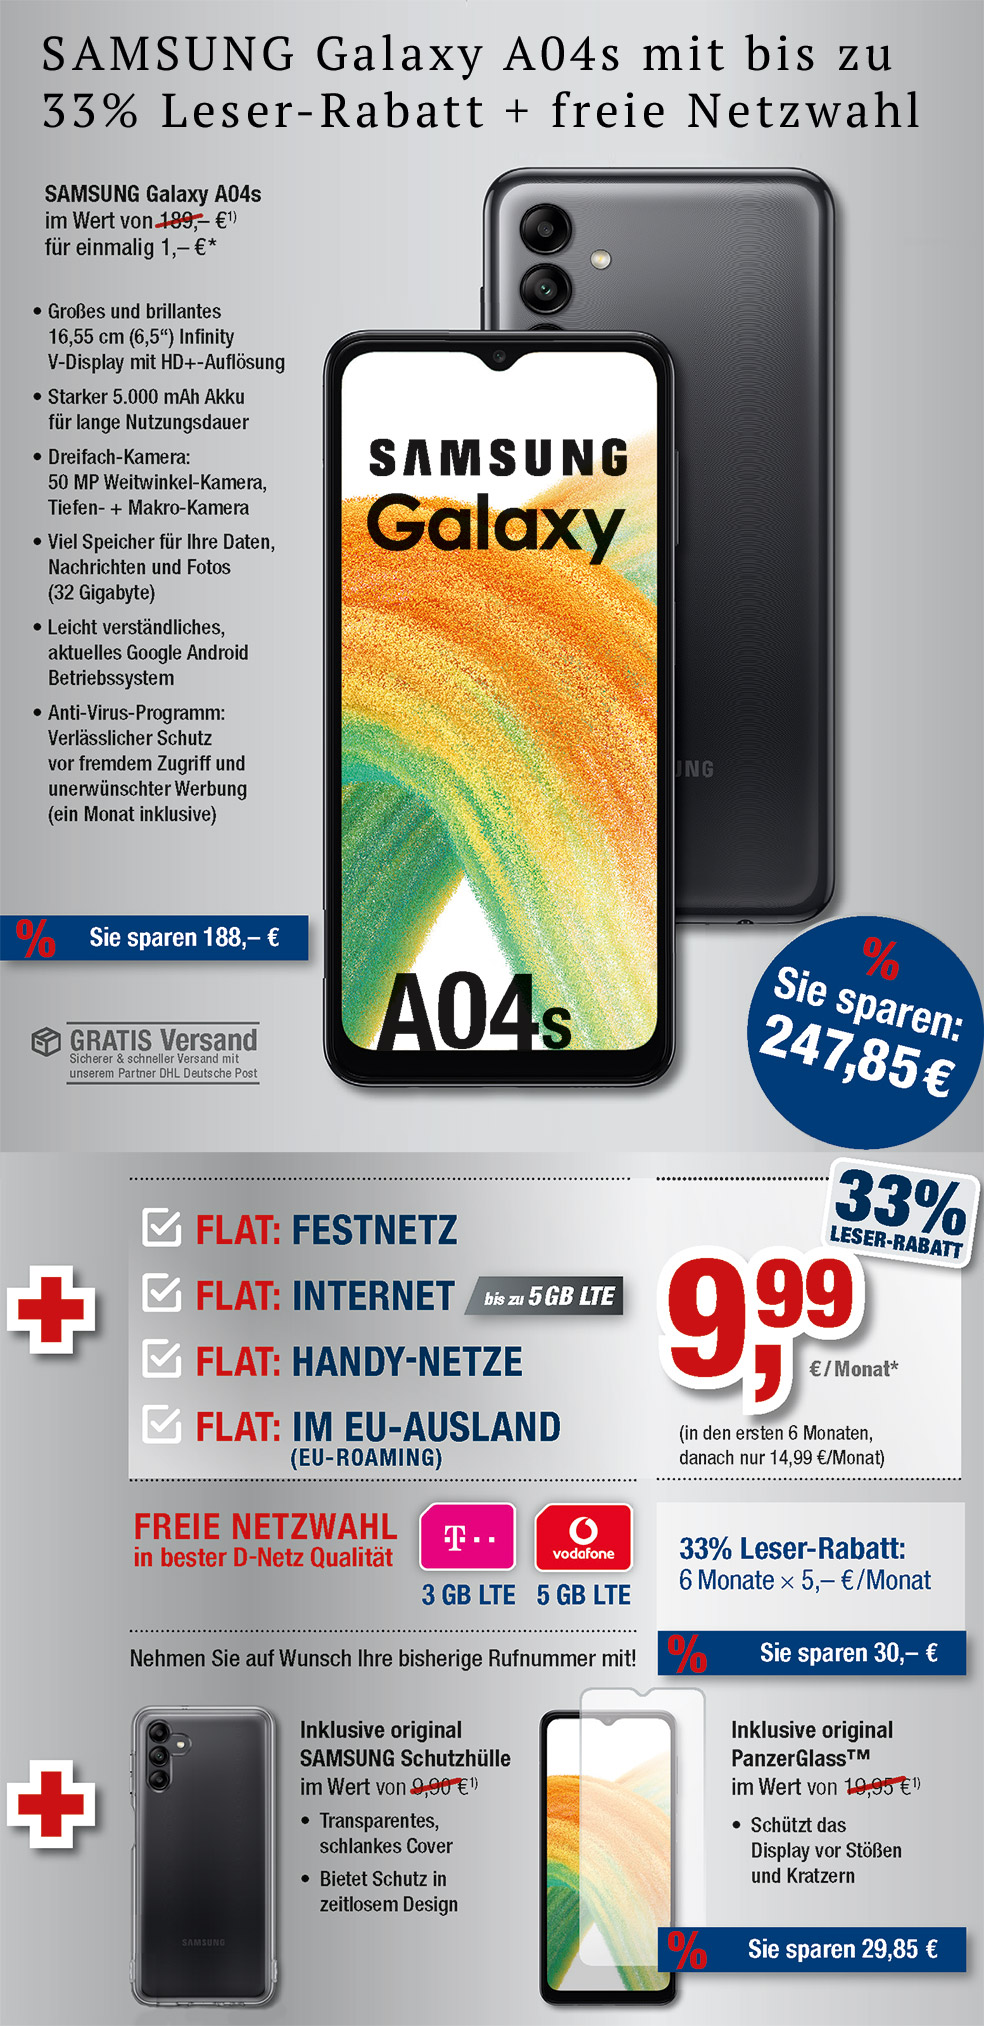 Für nur 1 €*: Samsung Galaxy A04s + Zubehör + All Net Flat für nur 9,99 €/Monat in den ersten 6 Monaten